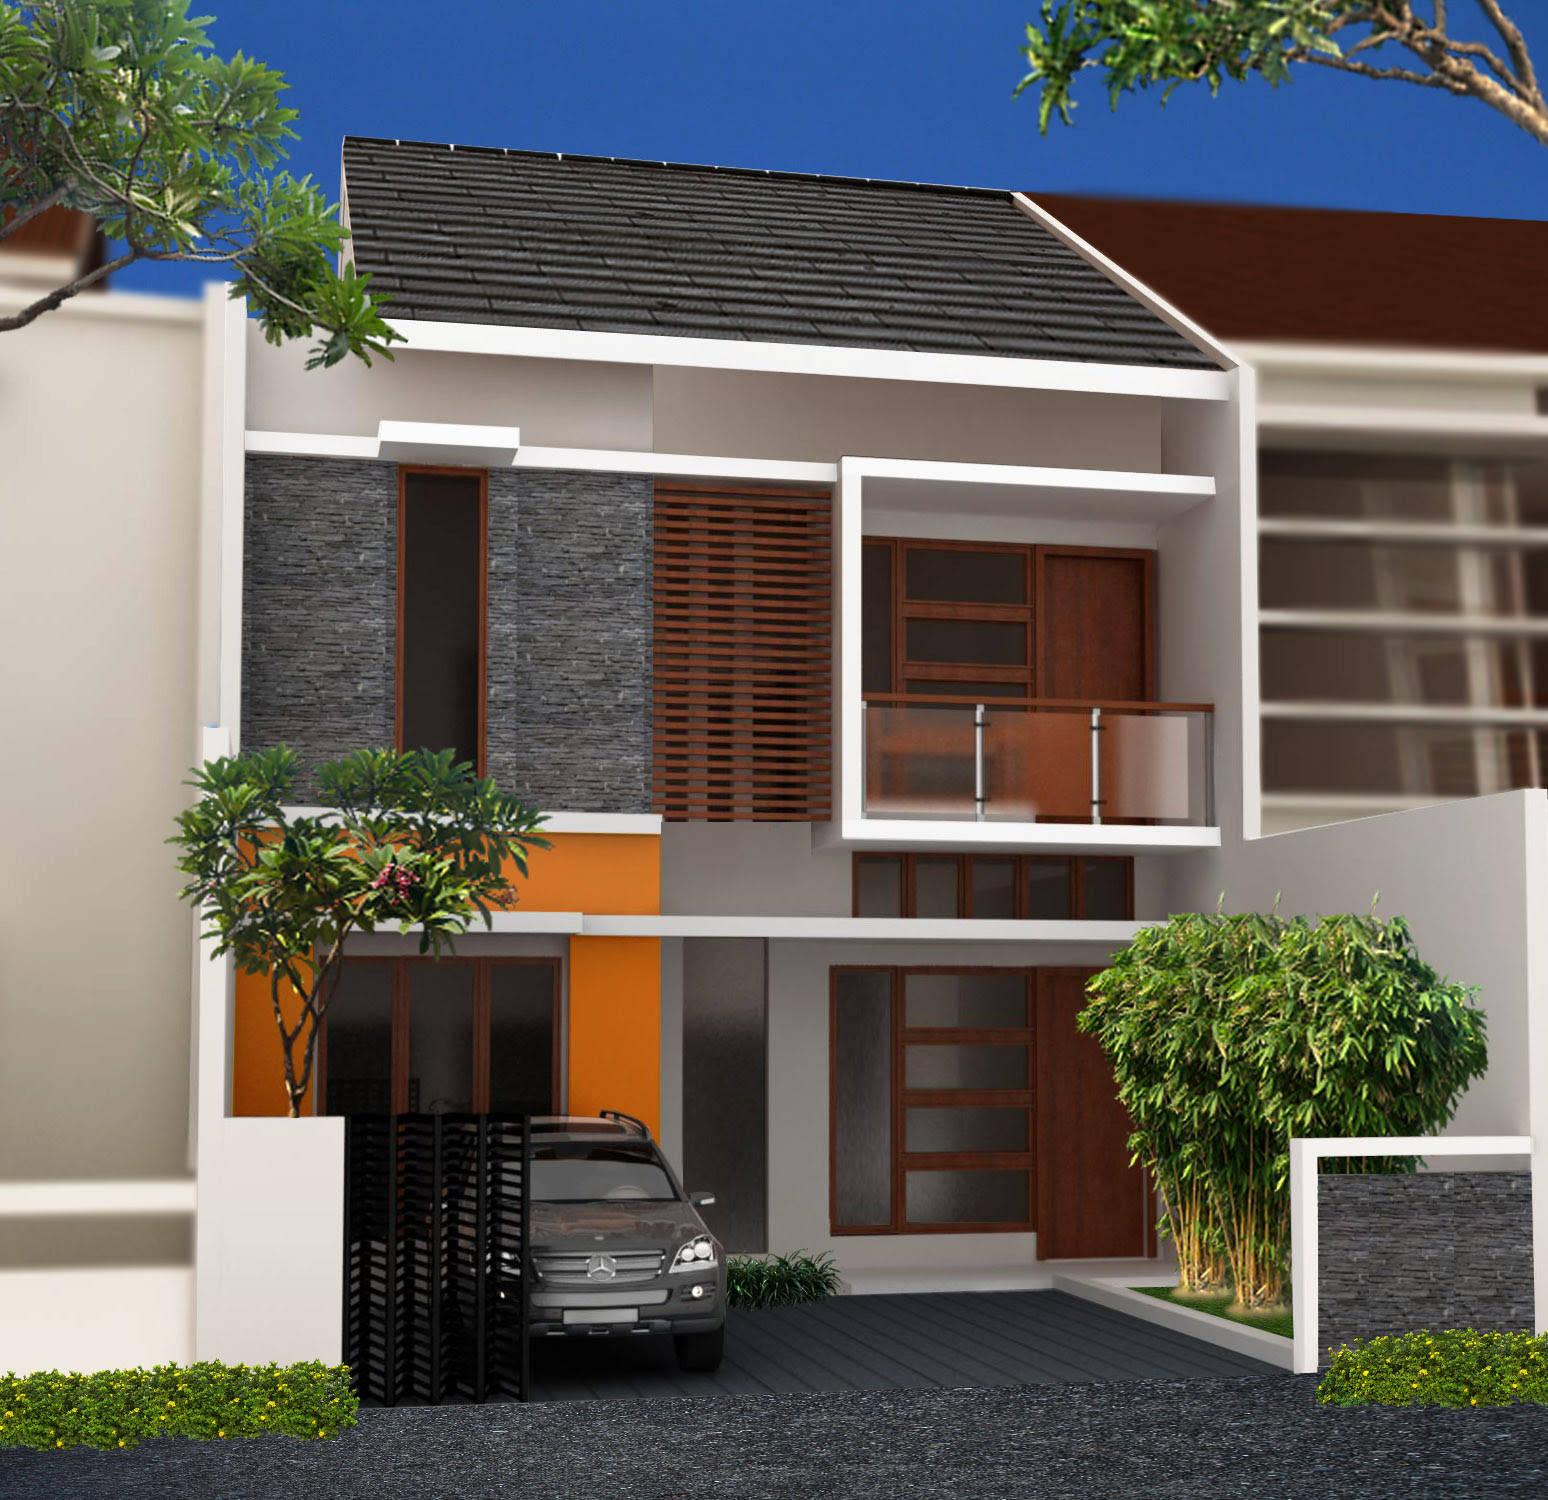 Desain Rumah 2 Lantai di Lahan 8 x 16 M2 | DR - 803 ...